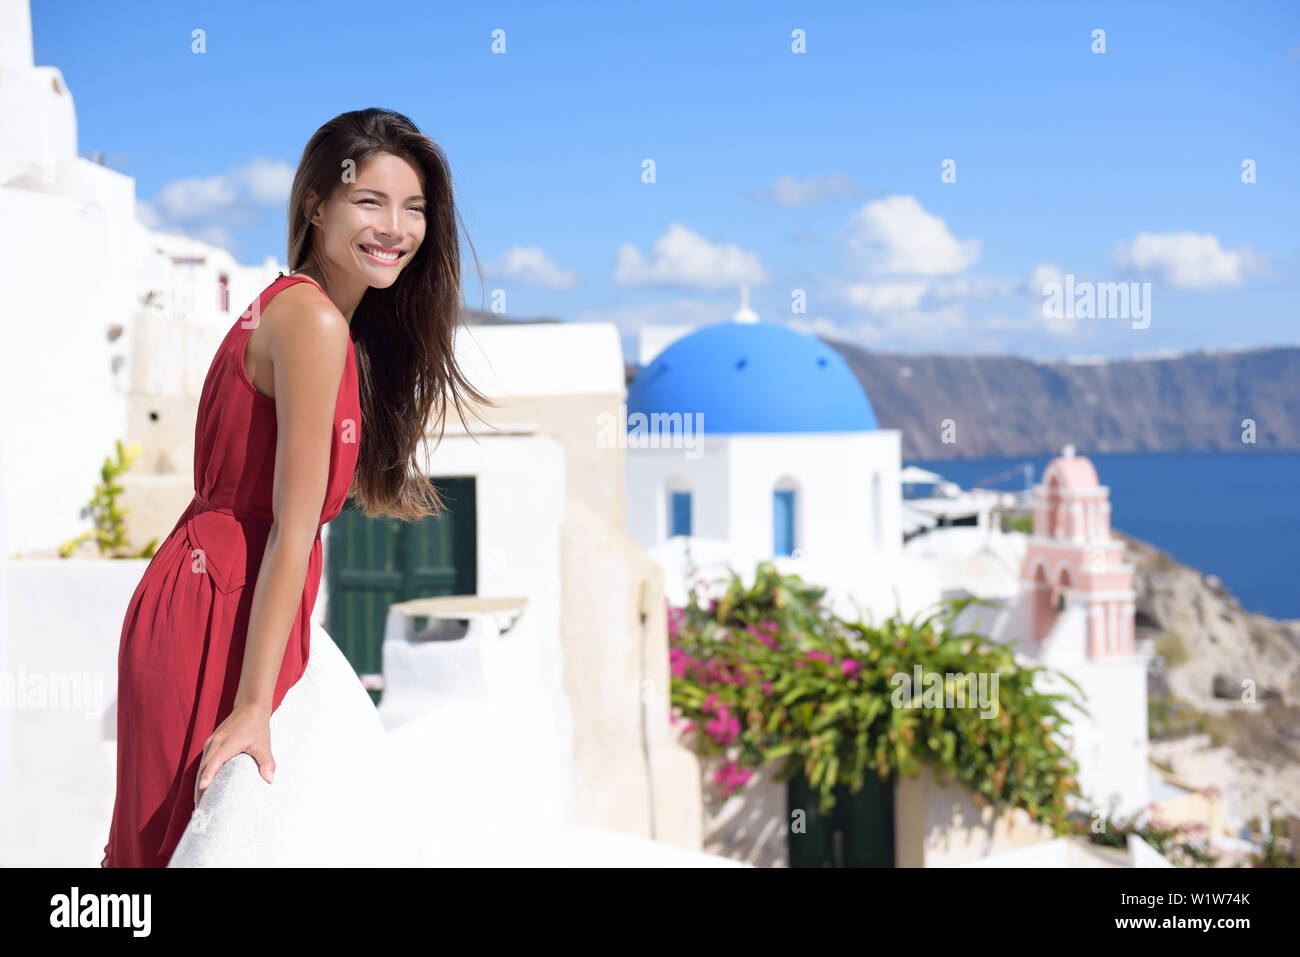 L'île de Thira Santorini Grèce tourisme - Asian woman wearing red dress on été voyage looking at view avec le célèbre attraction trois dômes chapelle église dans l'arrière-plan. Destination de luxe. Banque D'Images